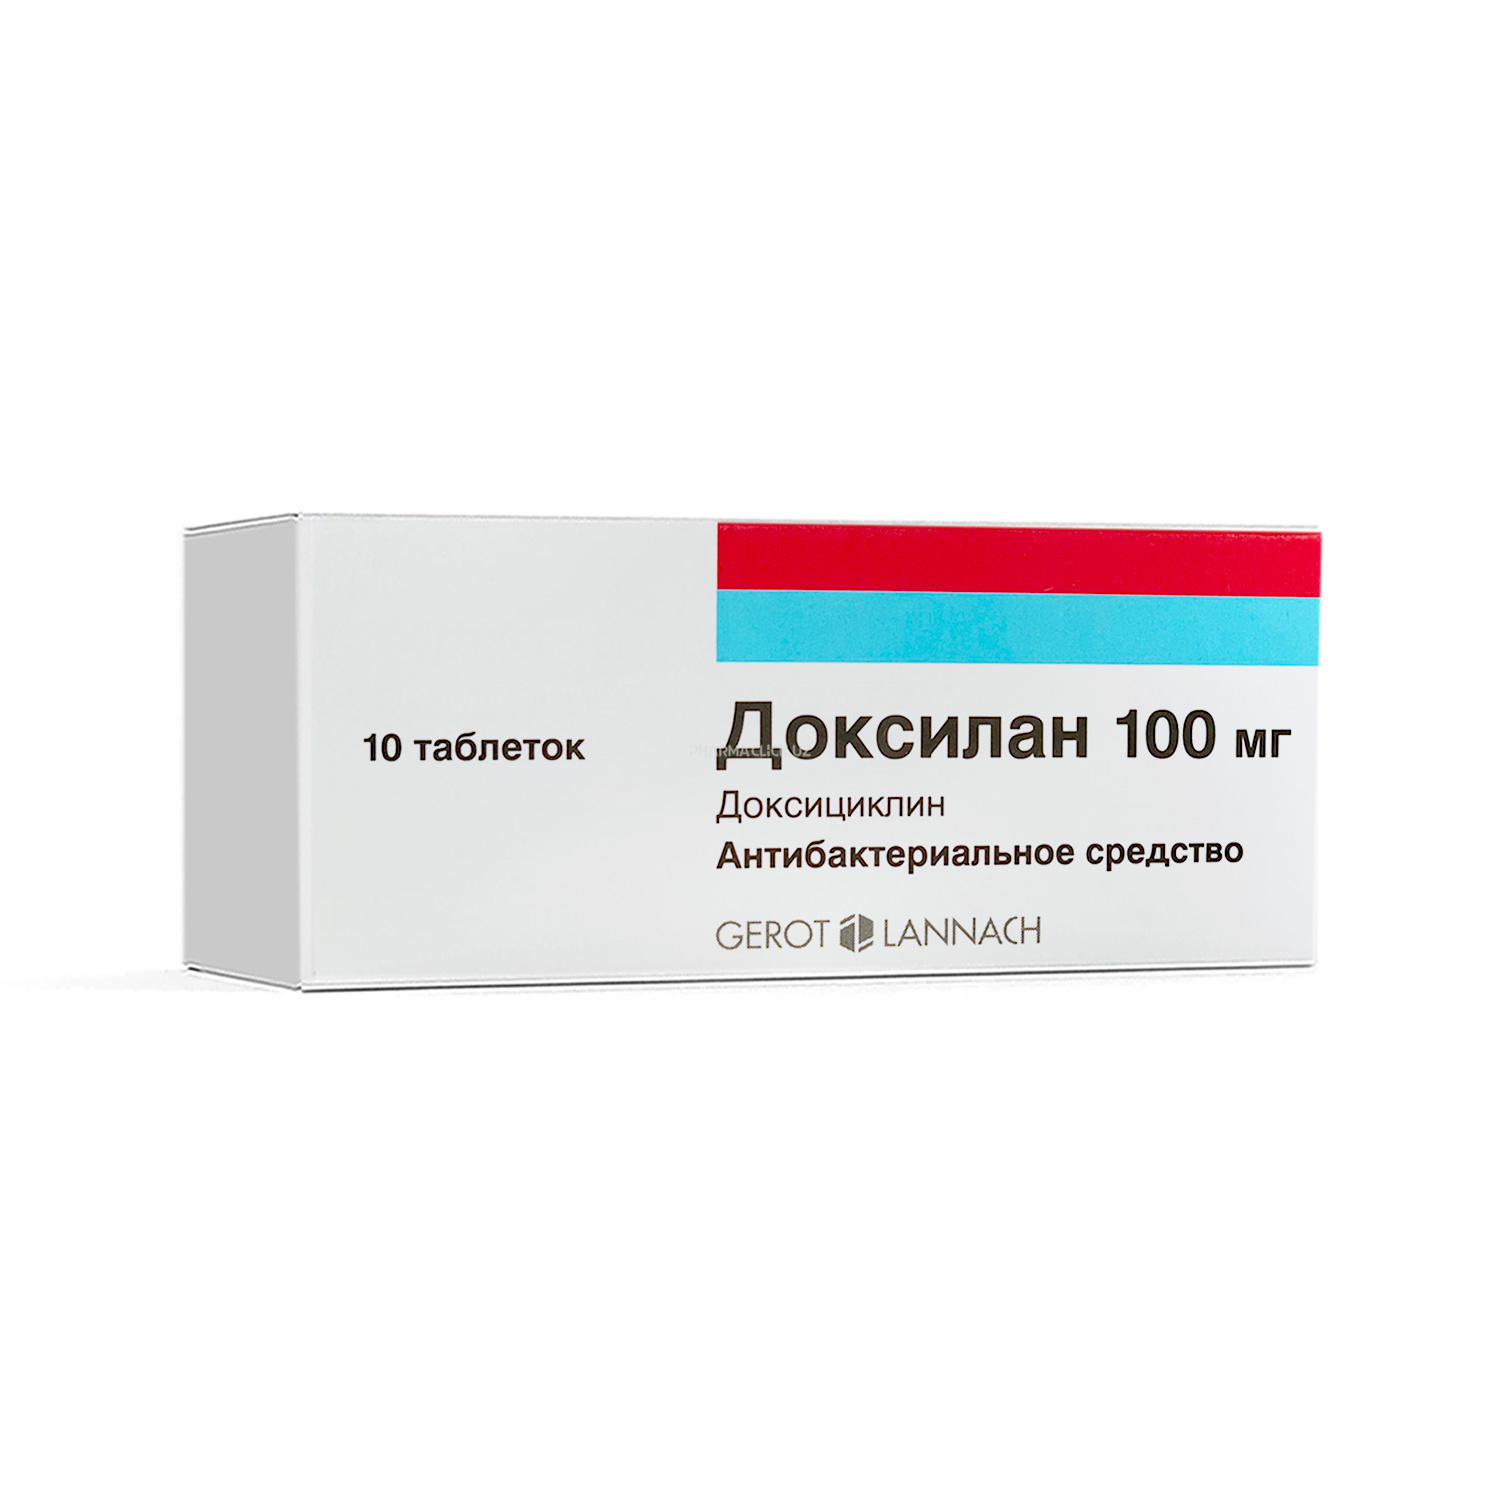 Doksilan 100 mg №10